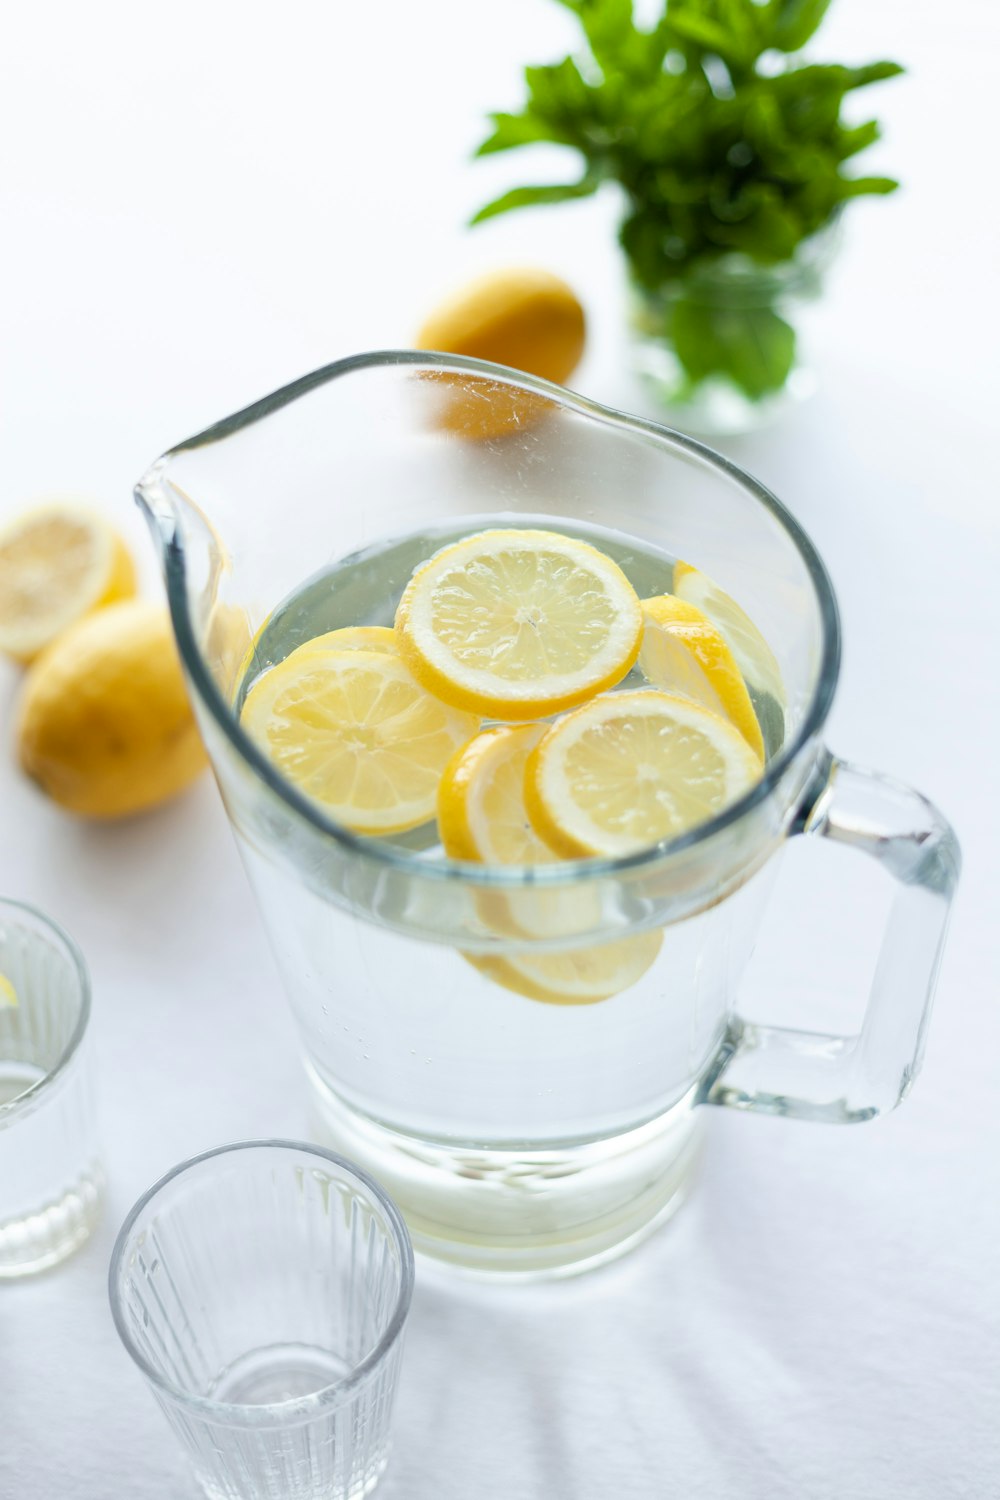 rodajas de limones en una jarra transparente llena de agua